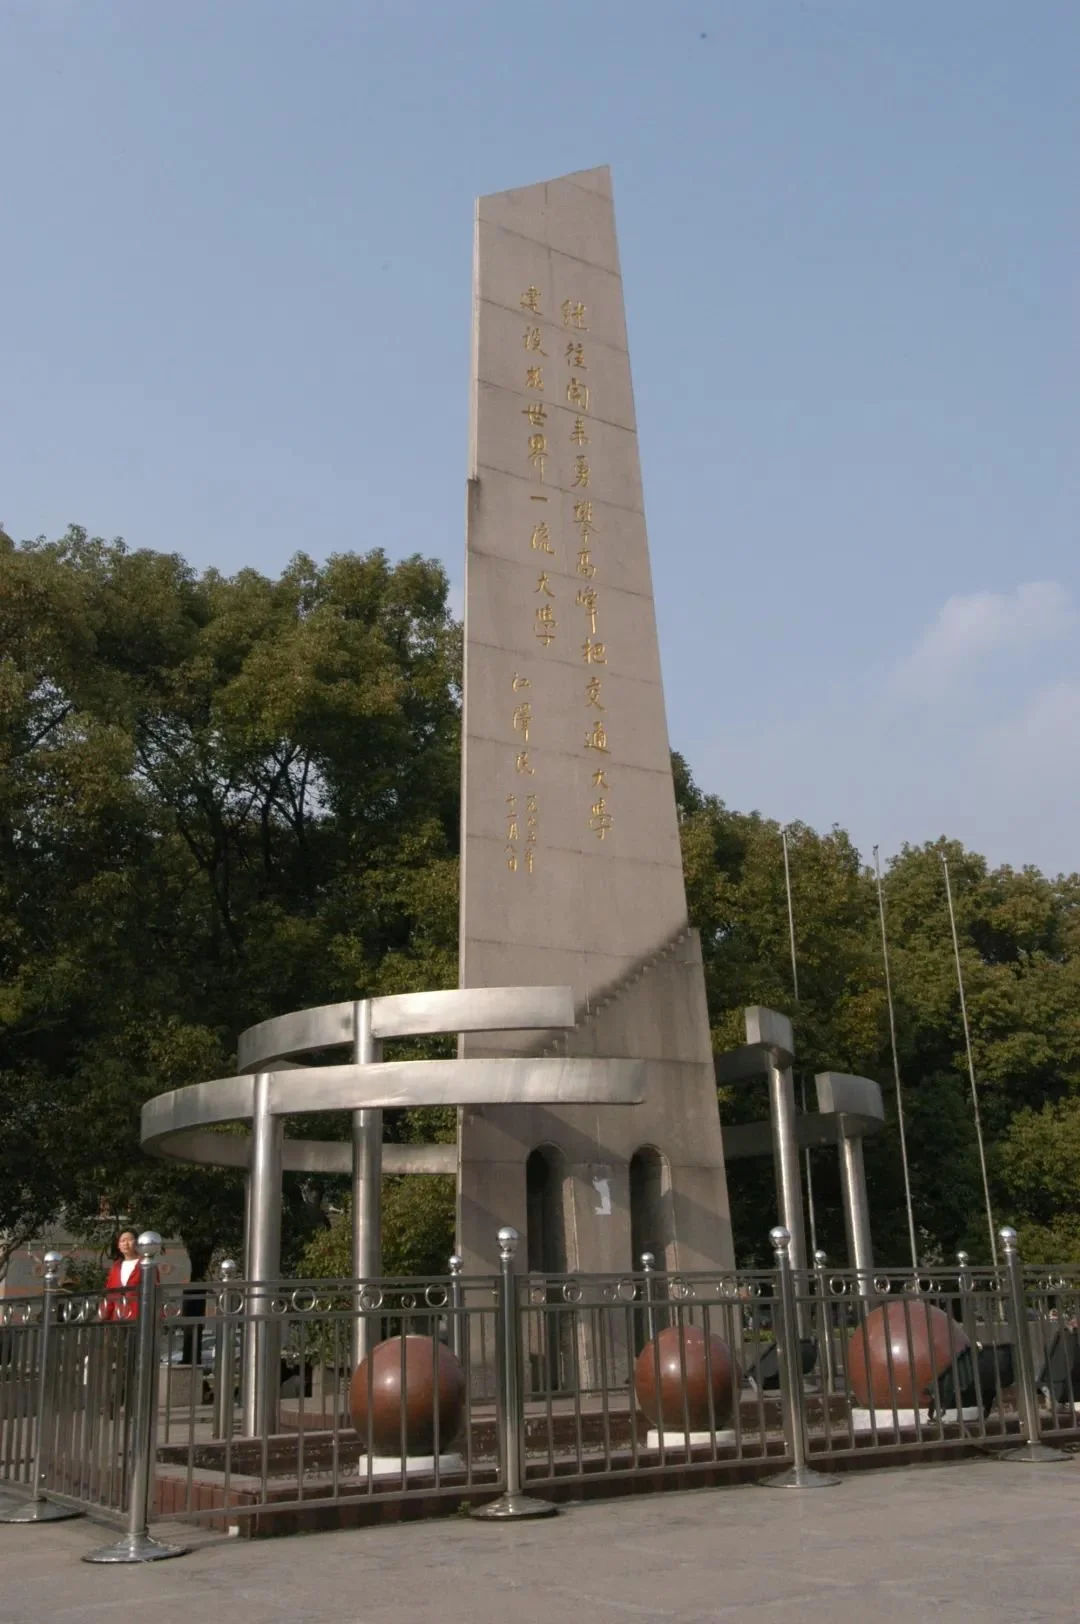 1995年12月，江澤民為交通大學百年校慶題詞。題詞鐫刻在徐匯校區中心廣場的百年校慶裏程碑上